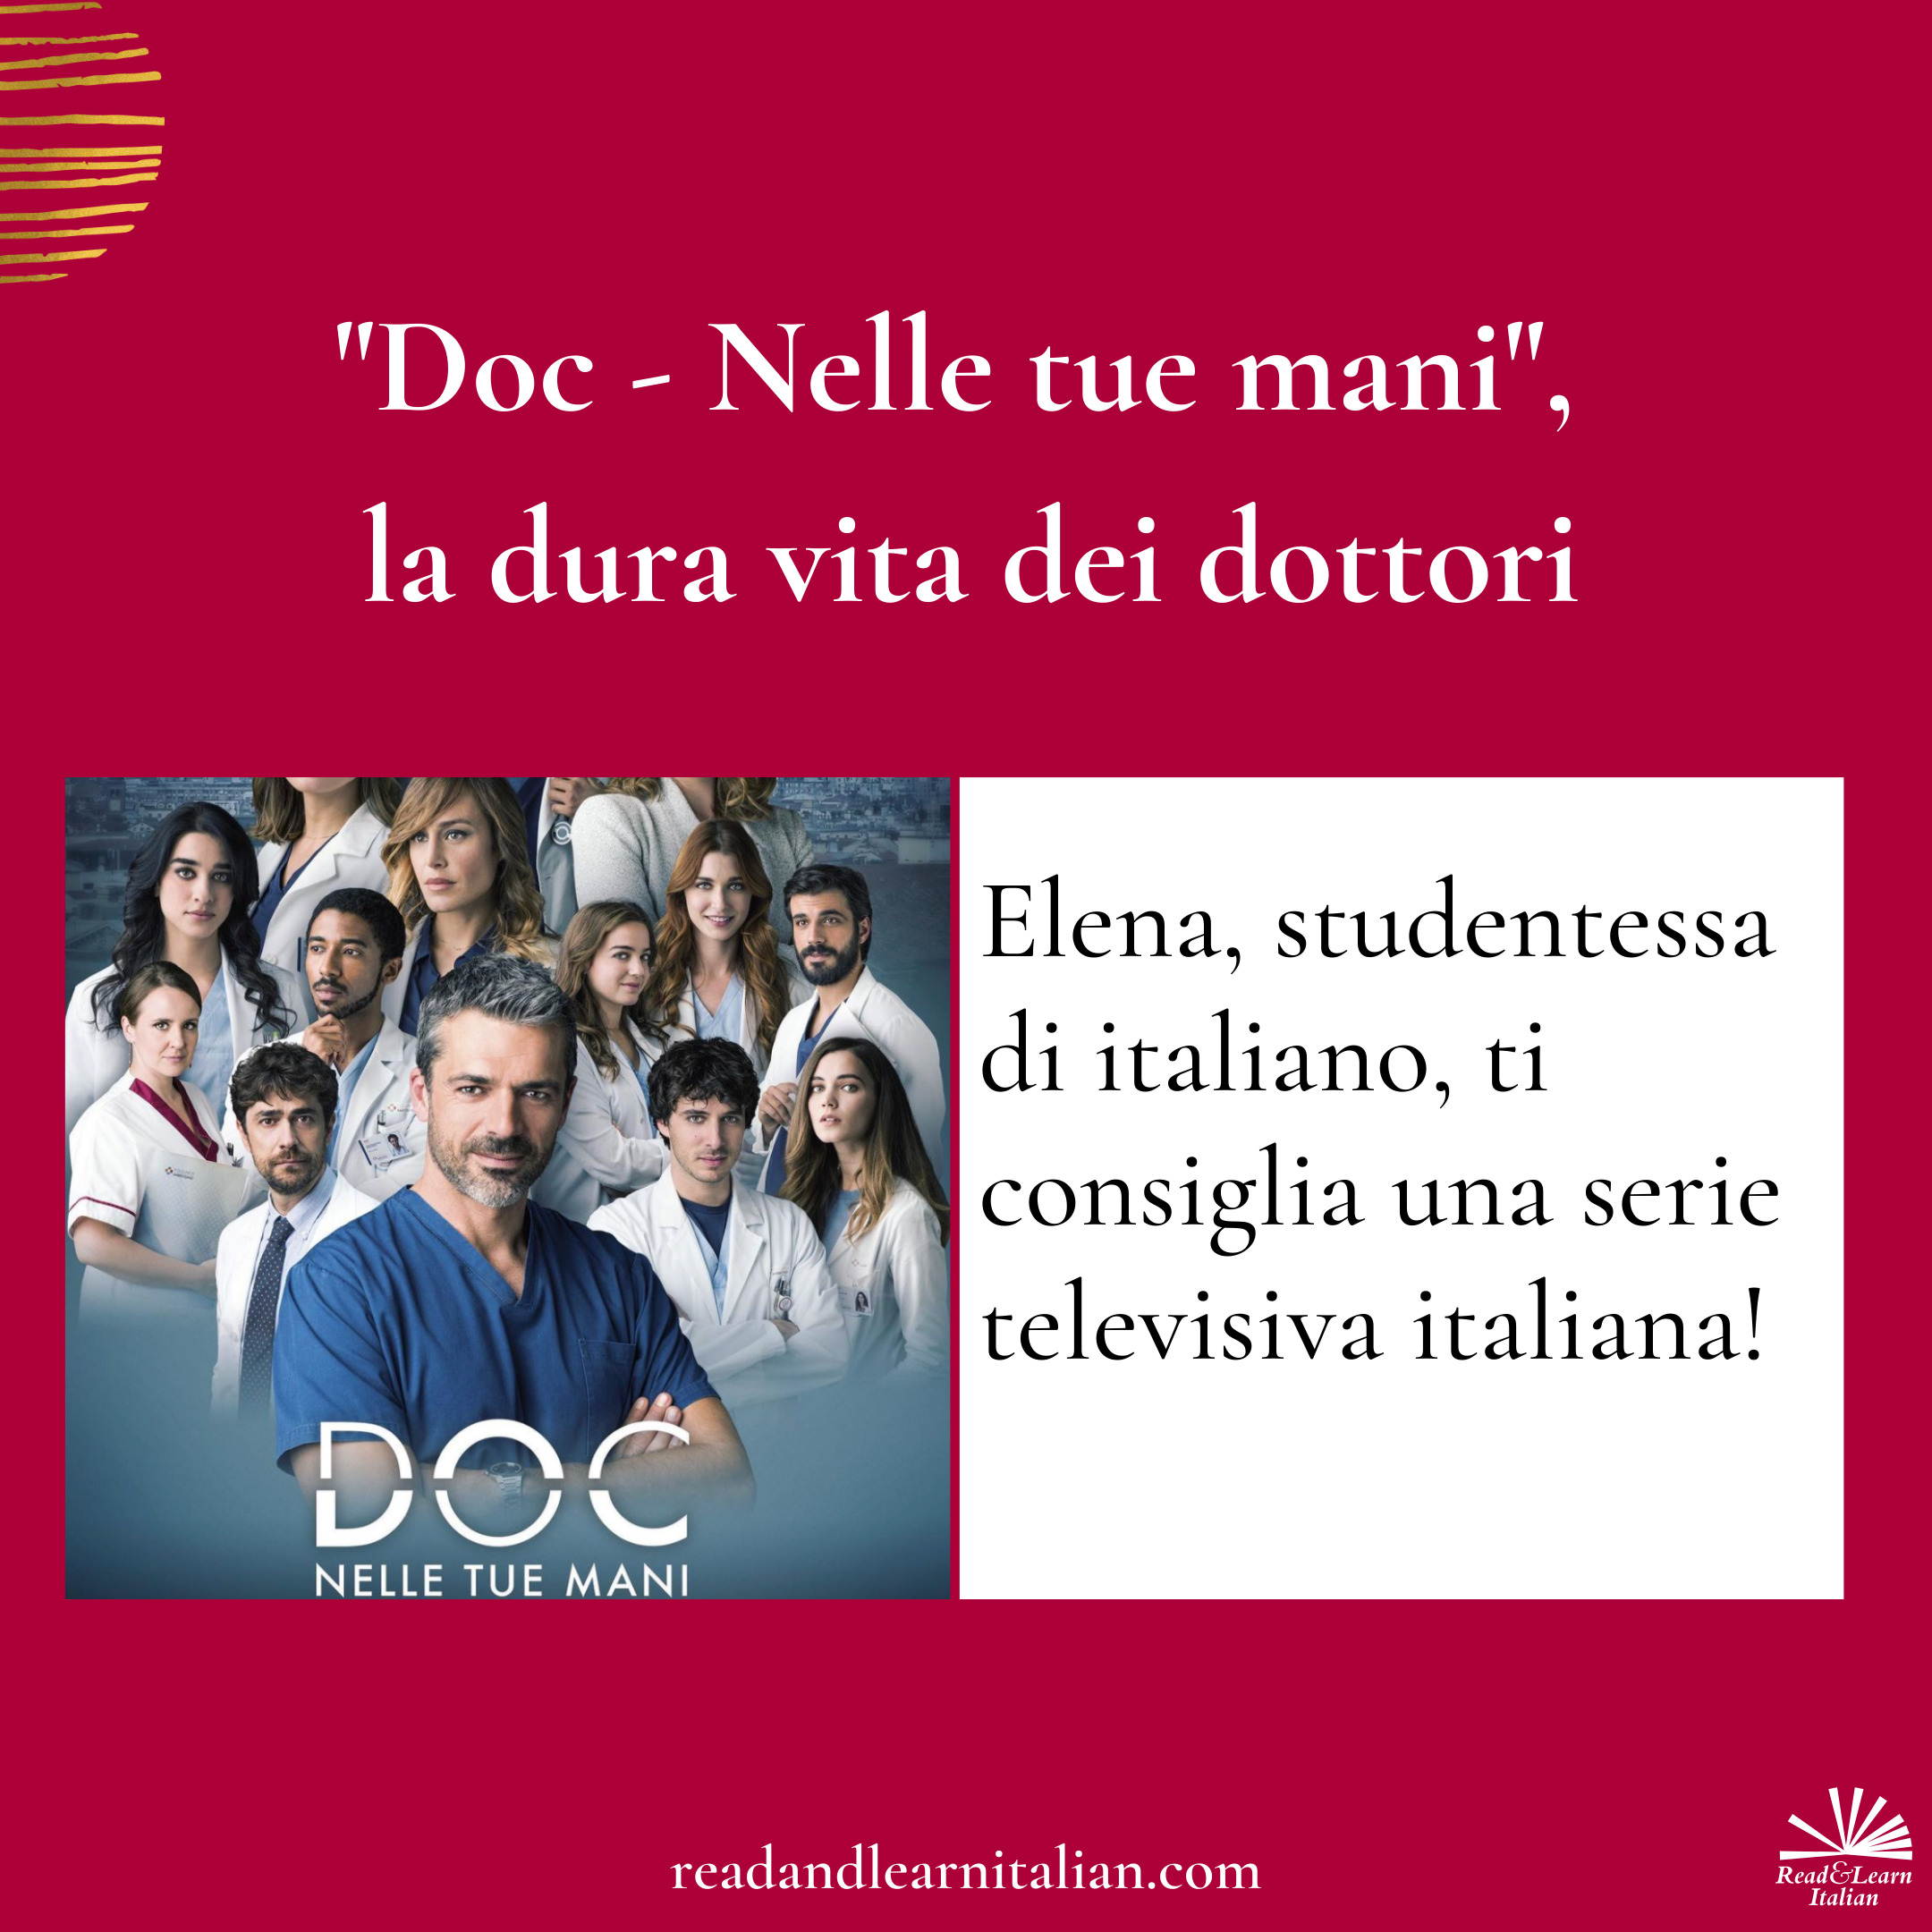 “Doc – Nelle tue mani”, la dura vita dei dottori